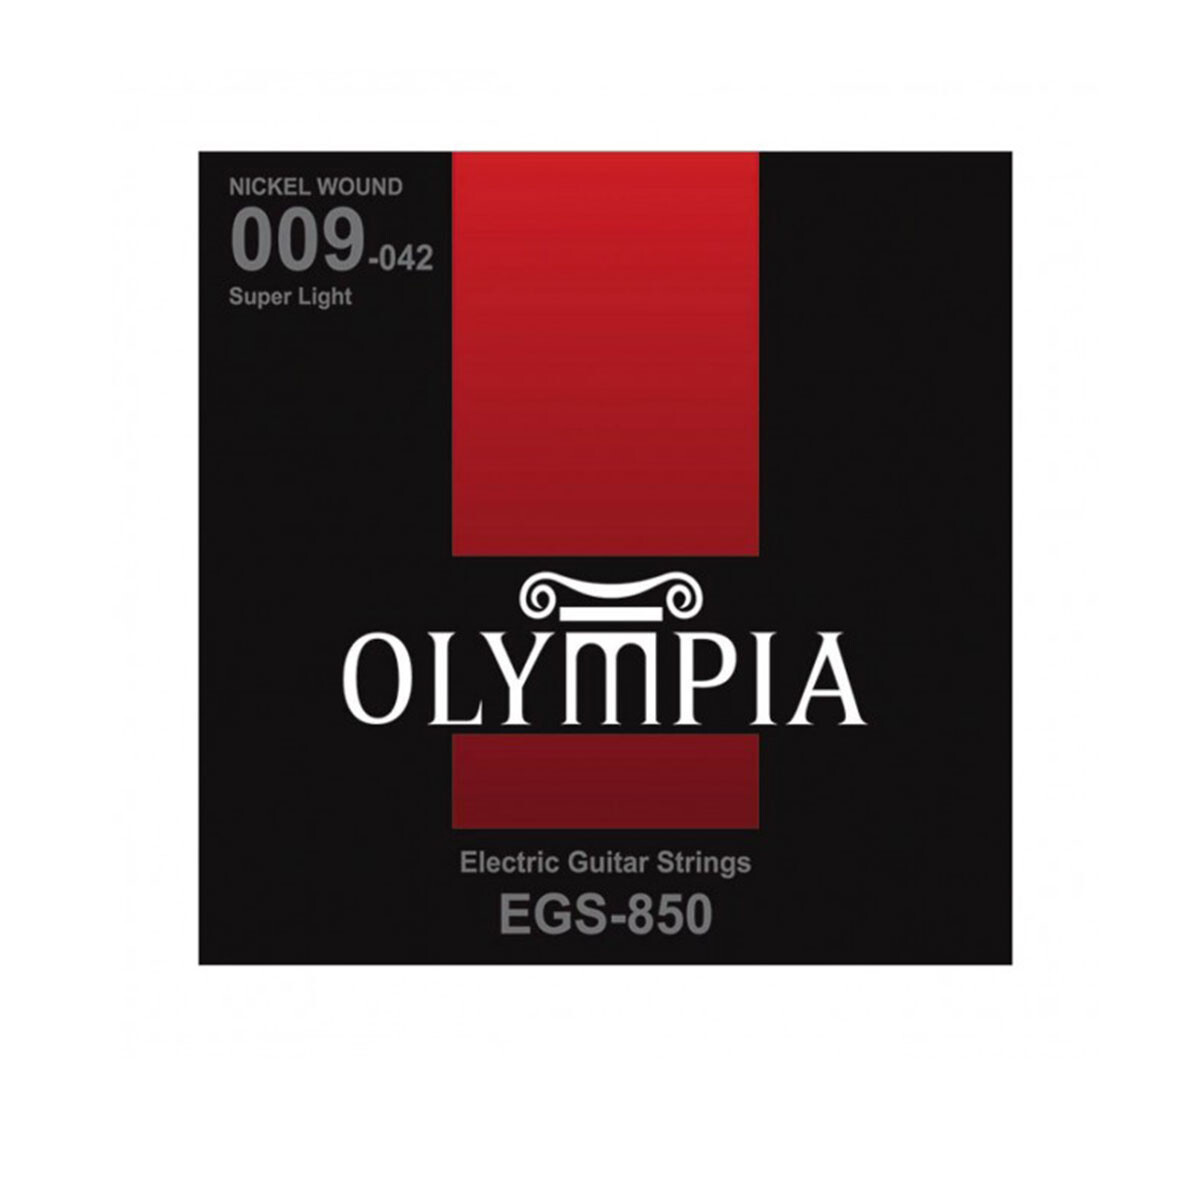 Encordado Electrica Olympia Egs850 009-042 